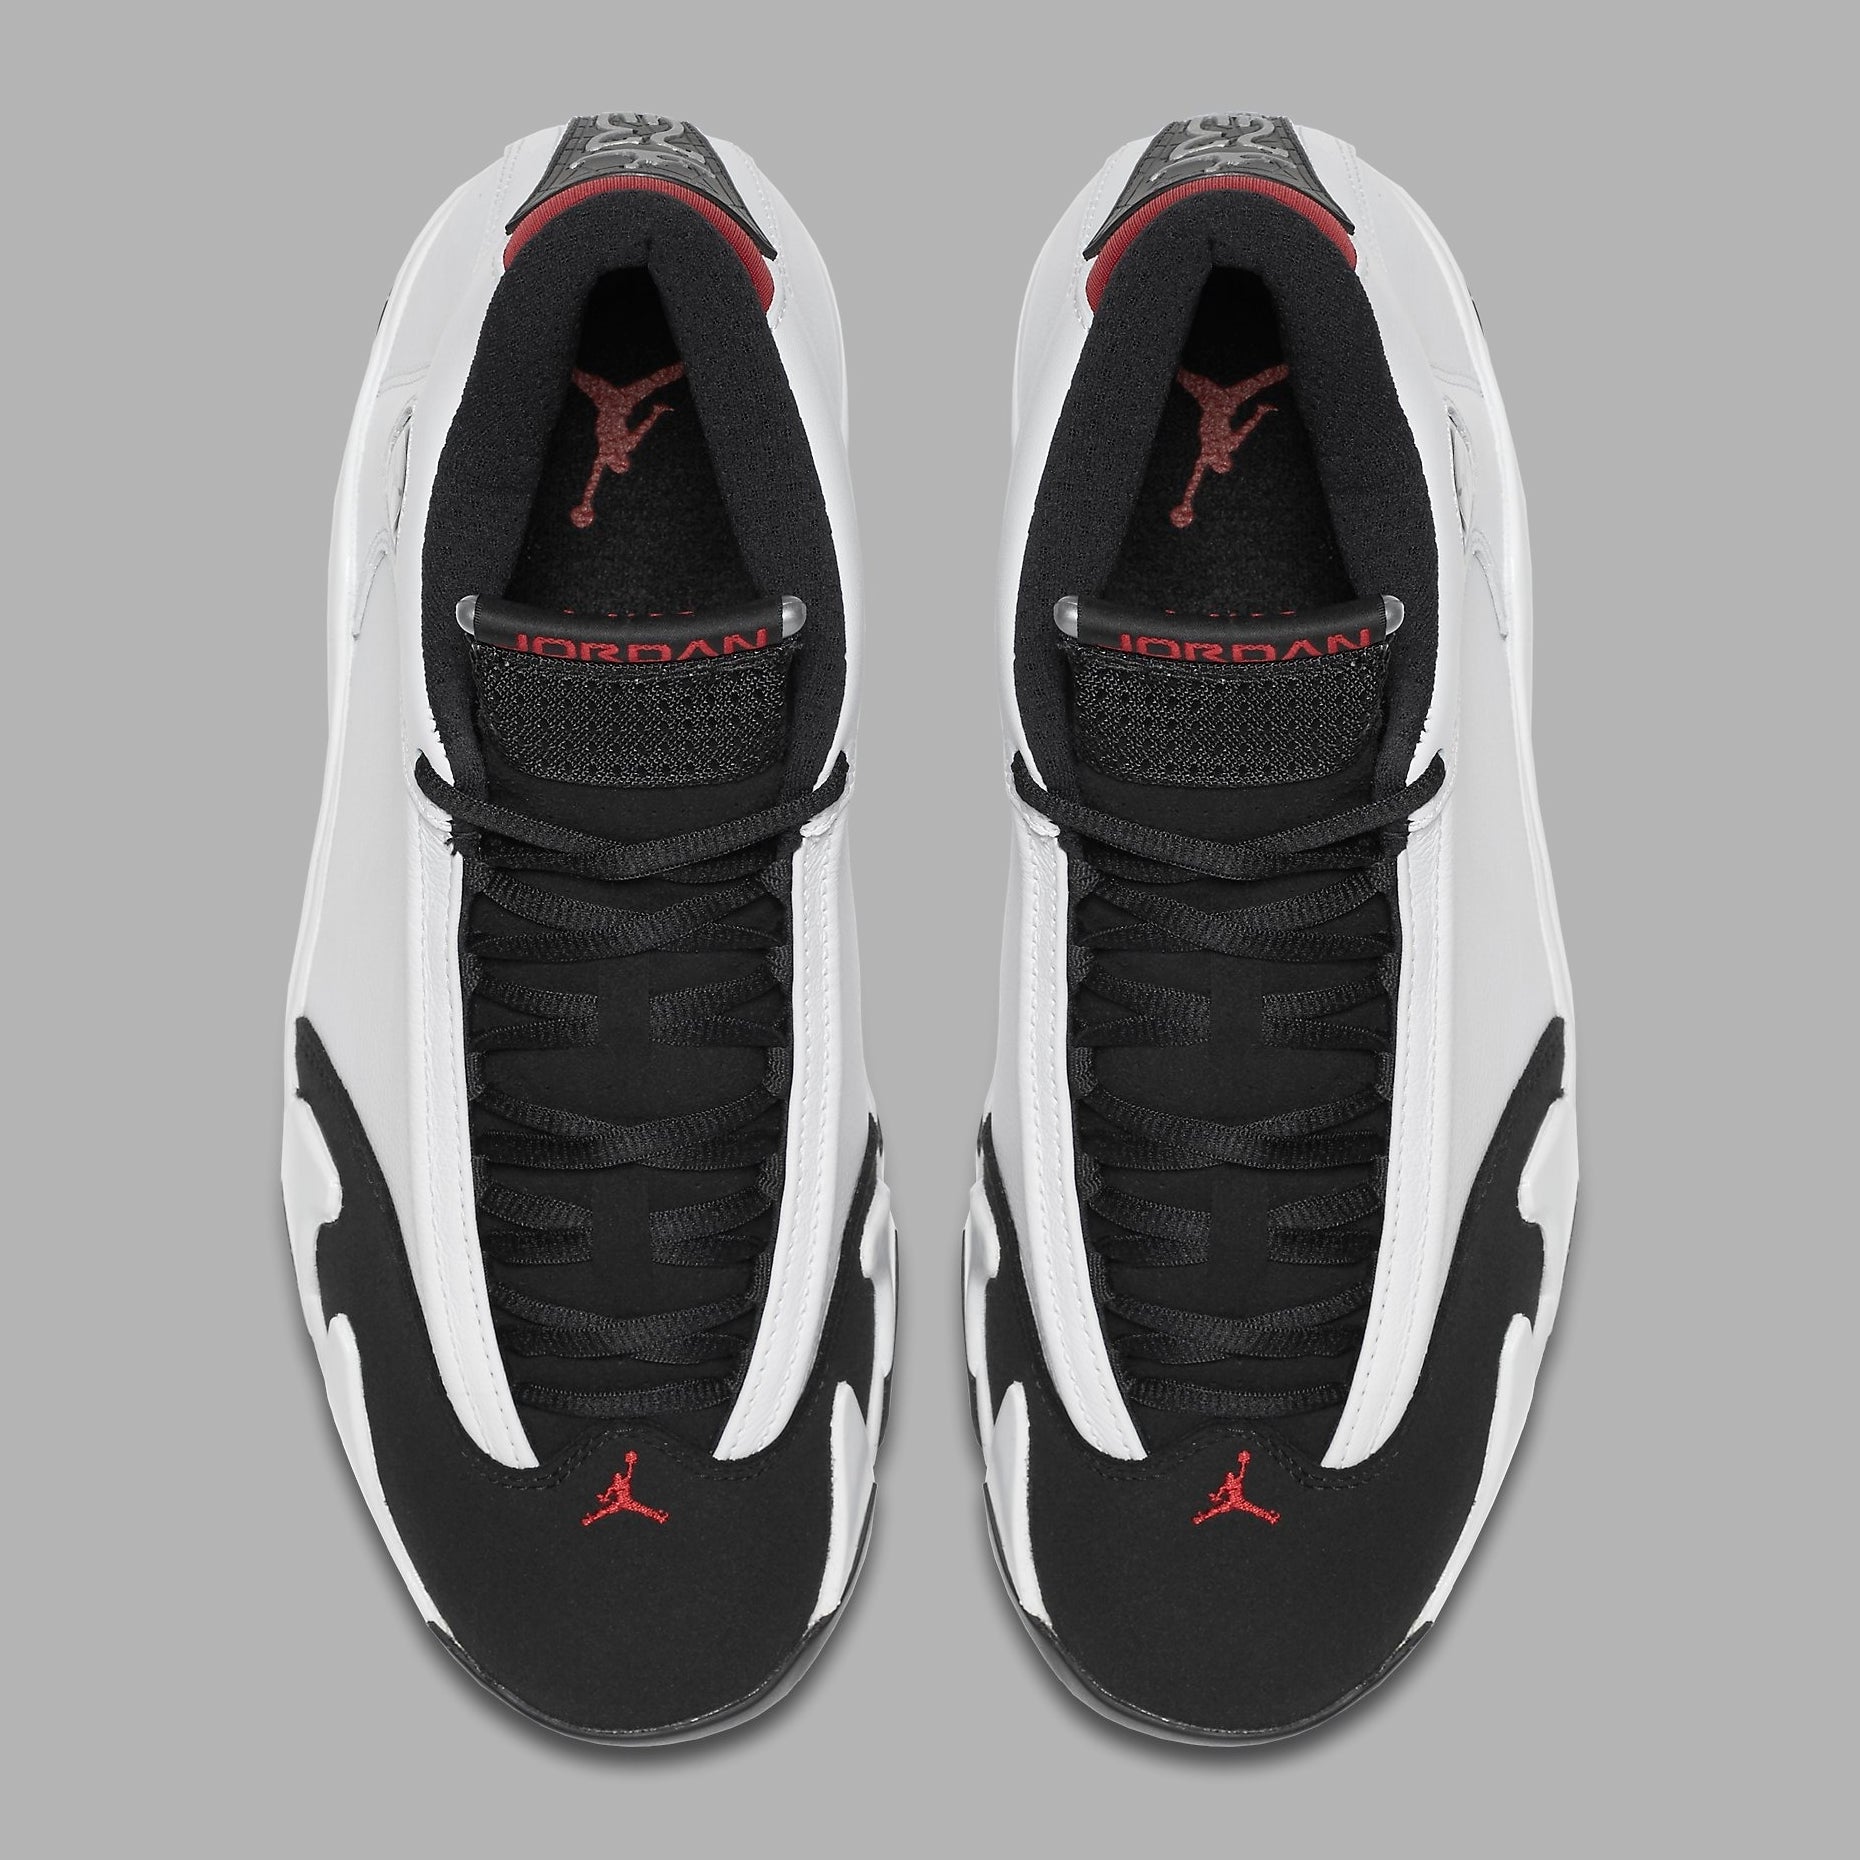 Air Jordan 14 XIV Black Toe Release Date Top